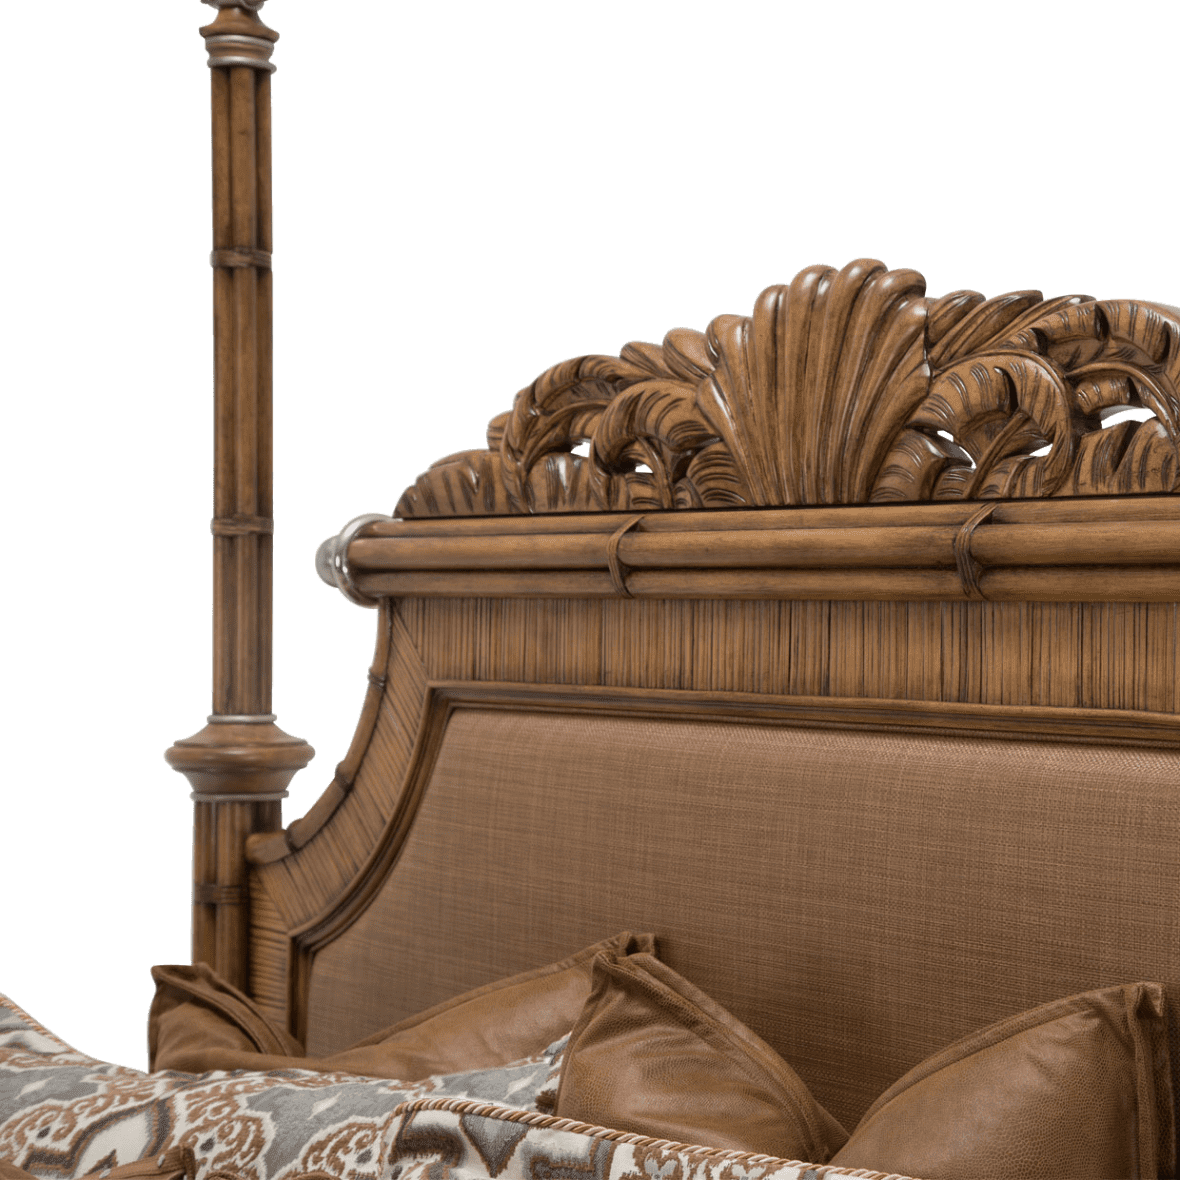 Кровать с балдахином размер Queen